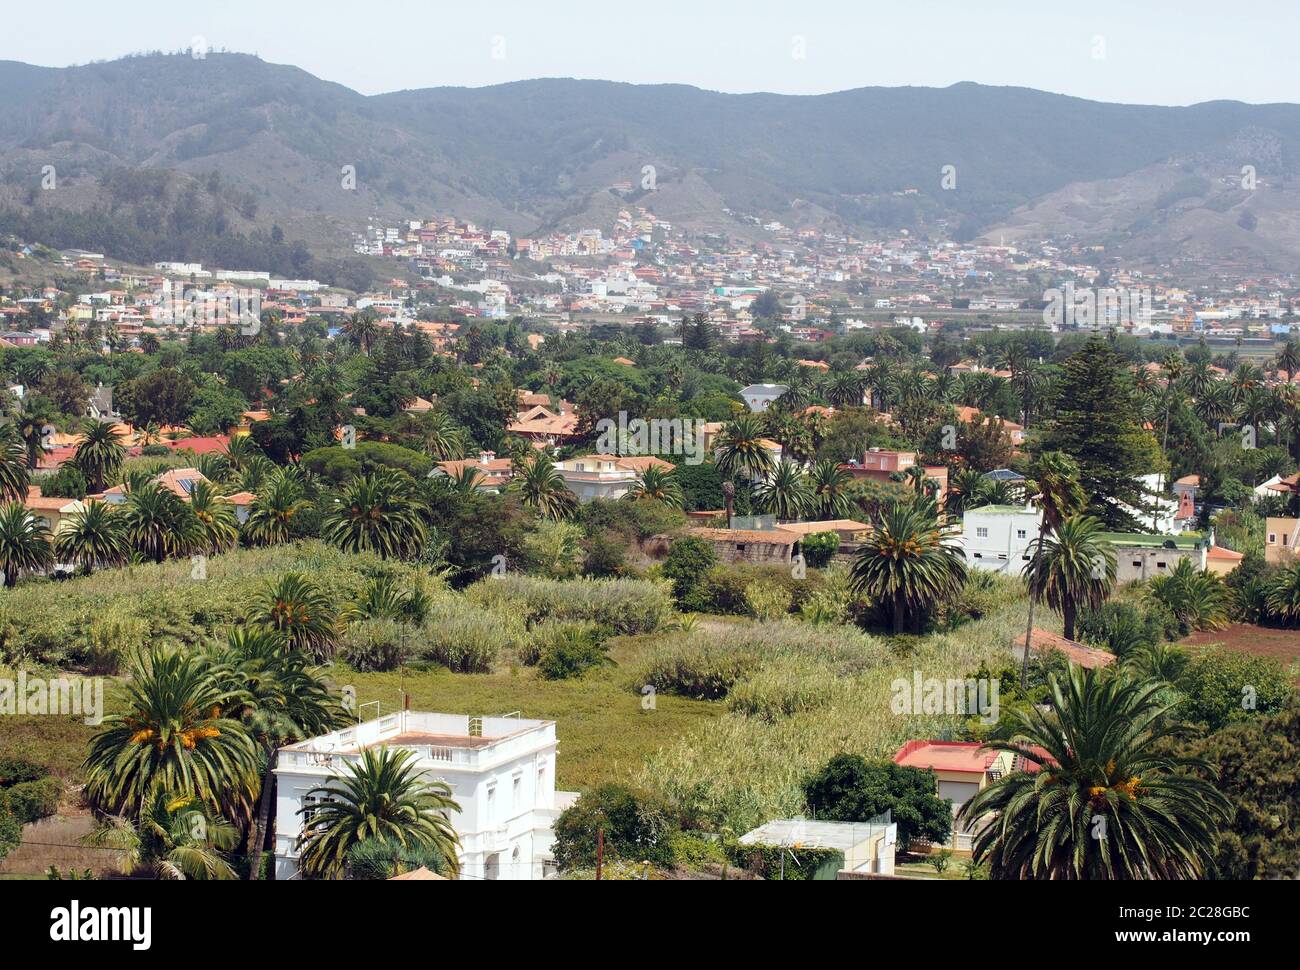 Vue panoramique sur la Laguna à Tenerife vue panoramique avec des maisons, des jardins et des montagnes Banque D'Images